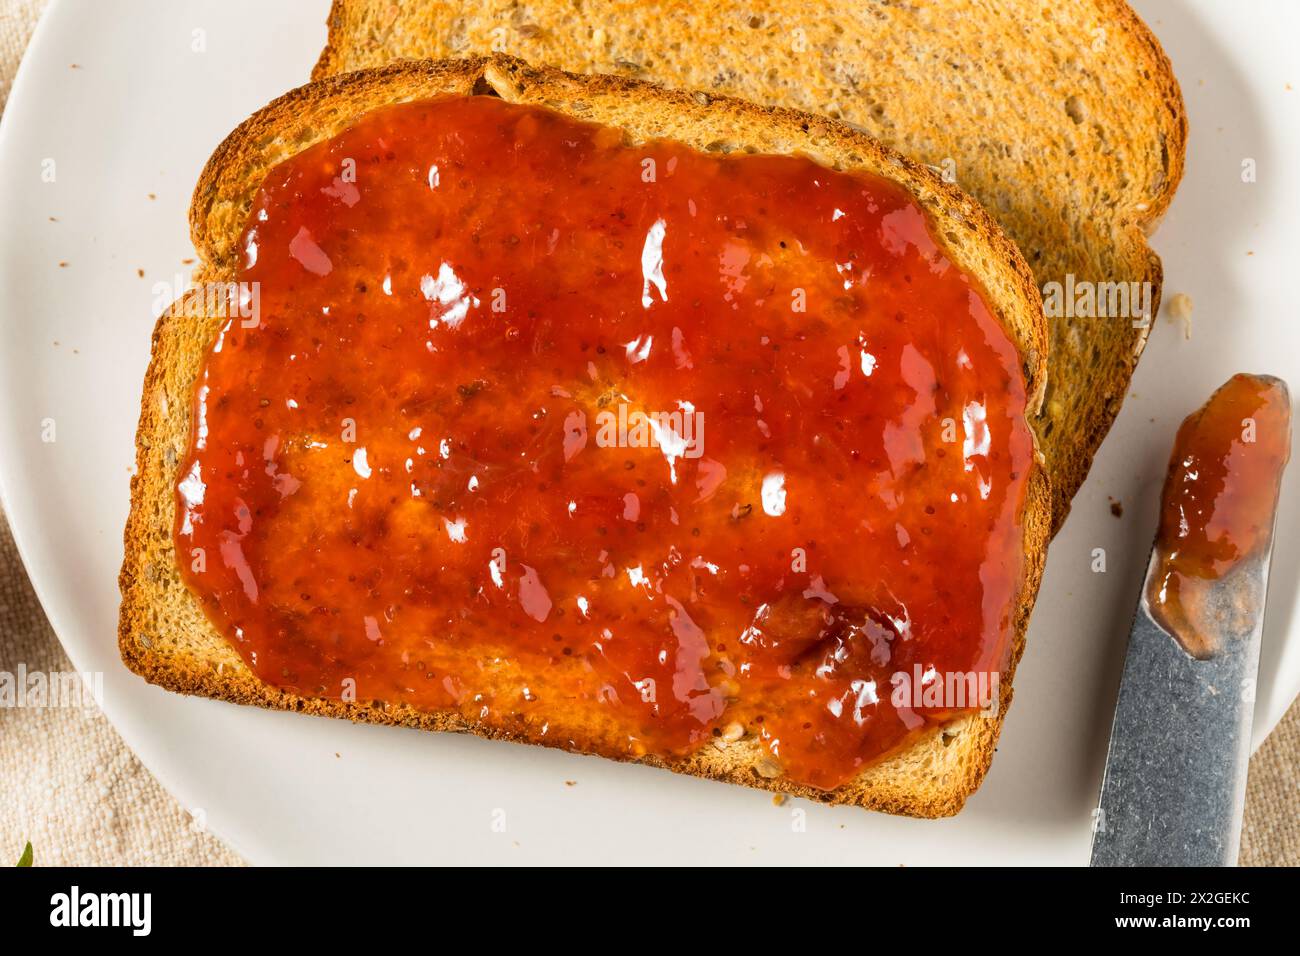 Confiture de fraises saine sur pain grillé pour le petit déjeuner Banque D'Images